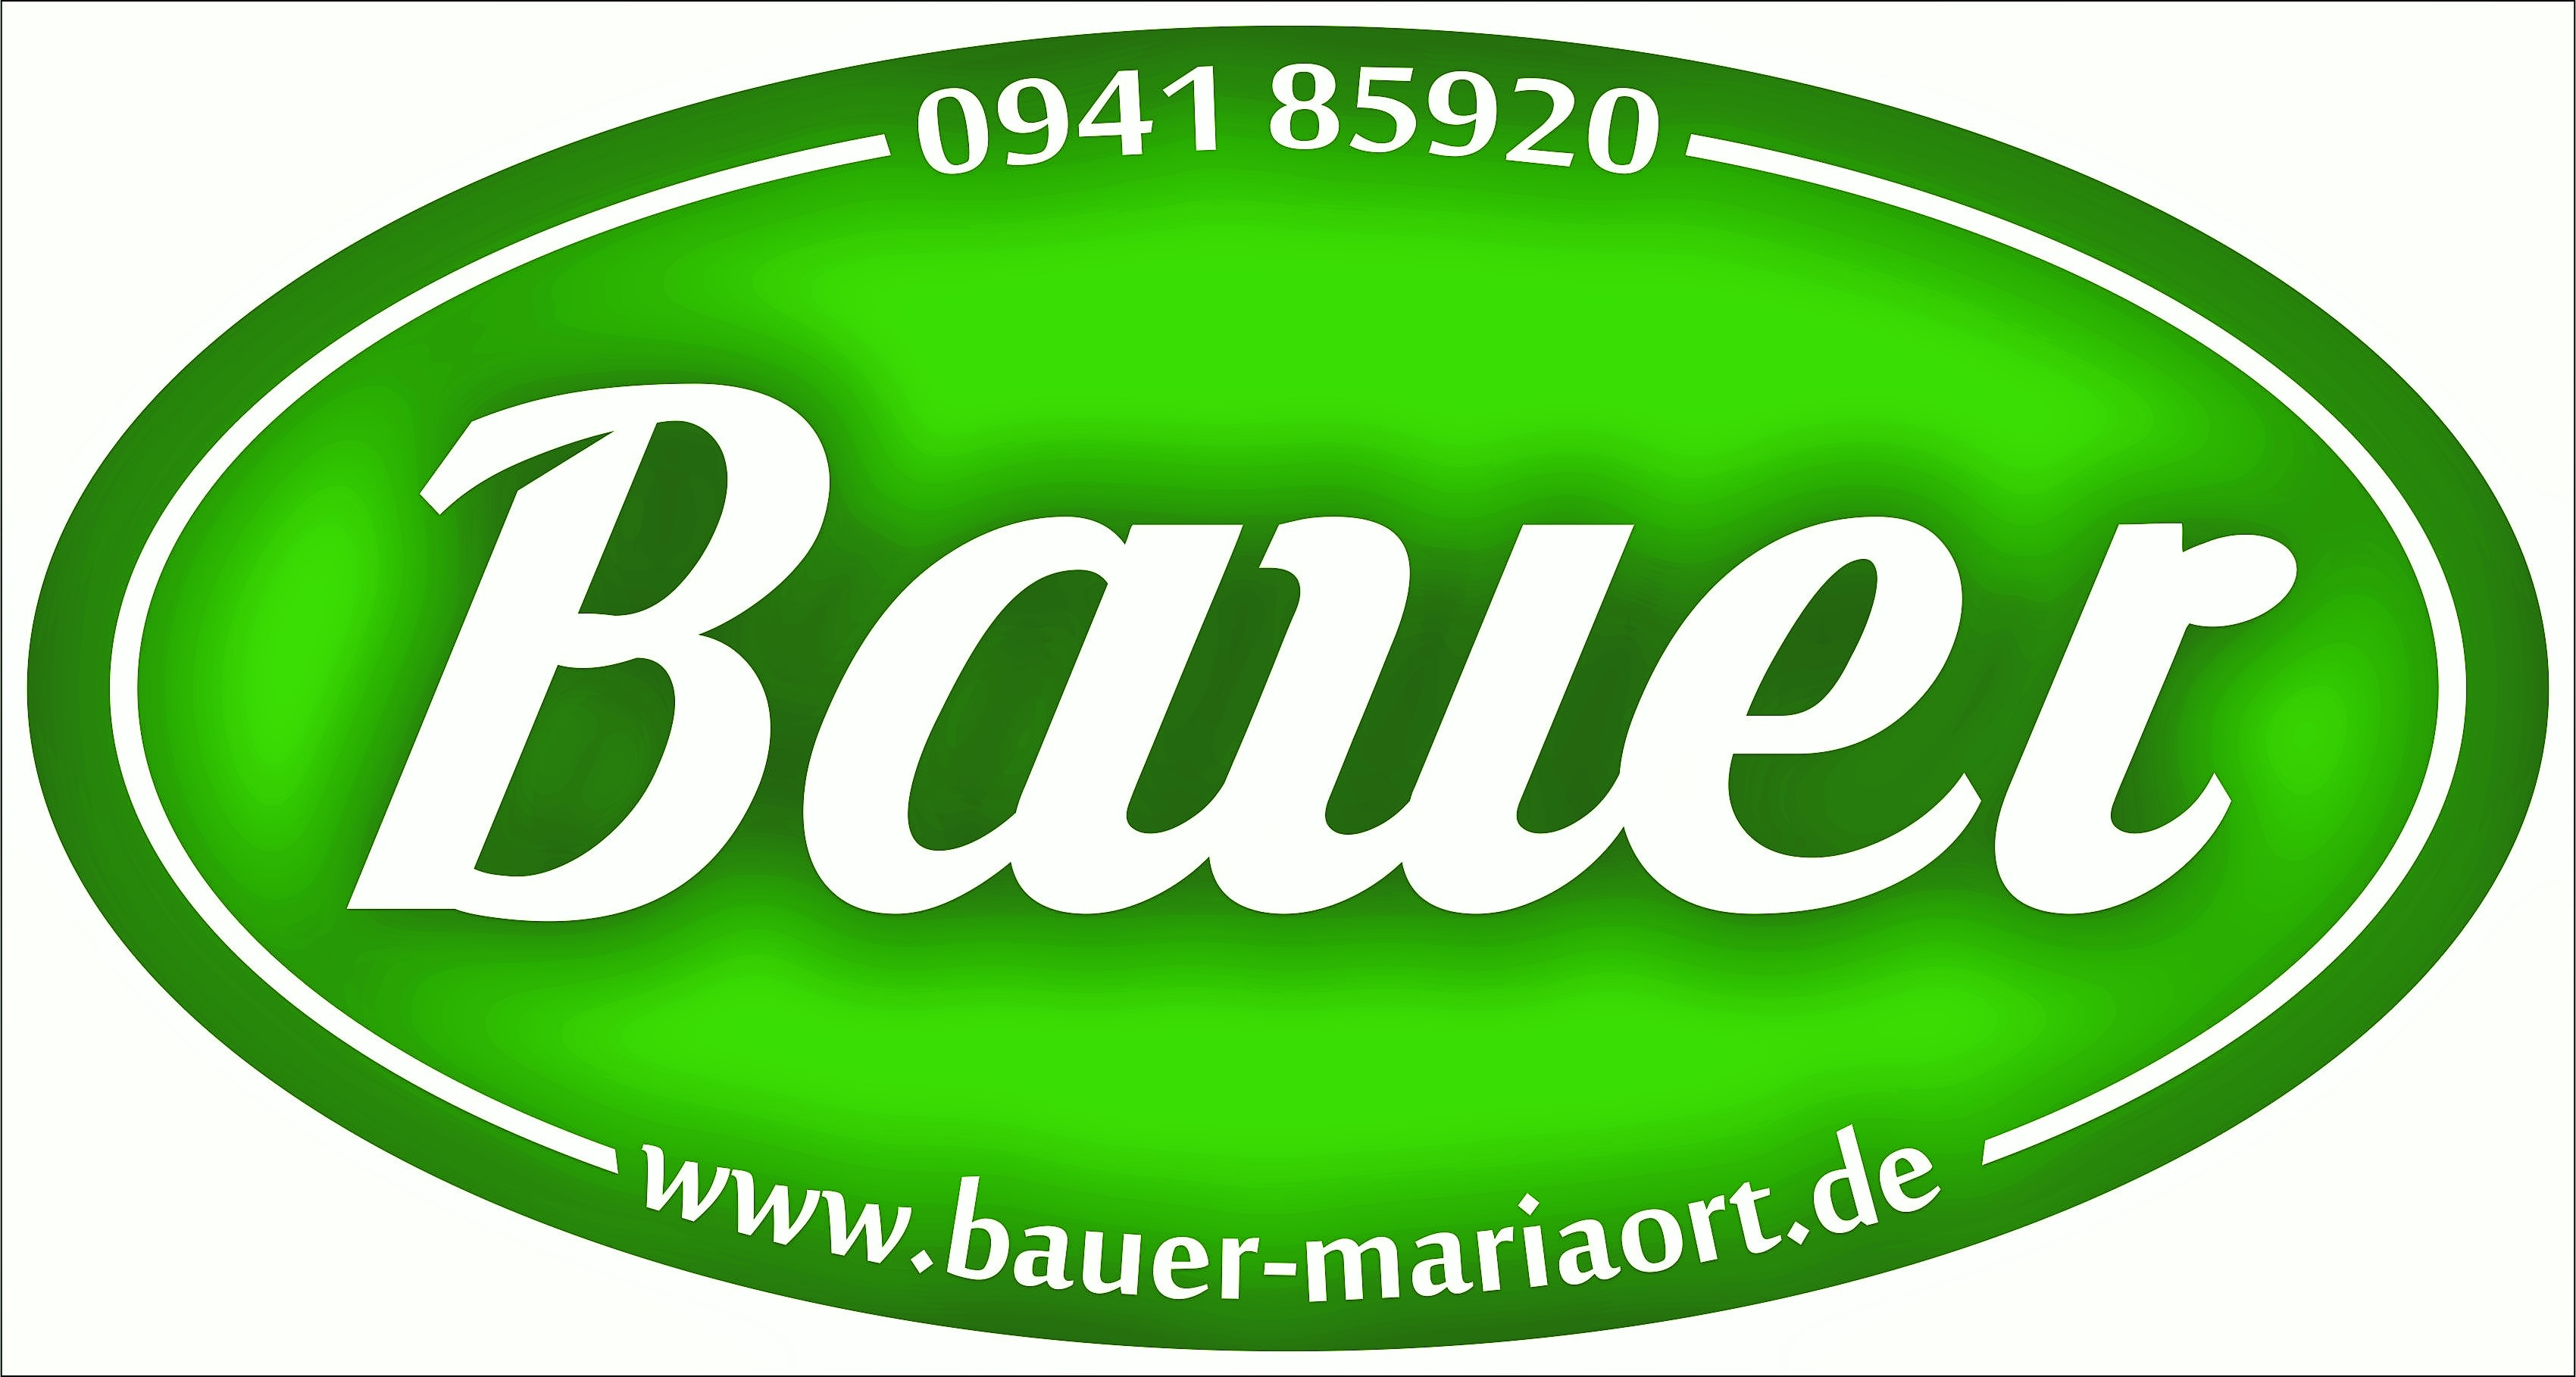 Adolf Bauer - Im Dienst der Umwelt